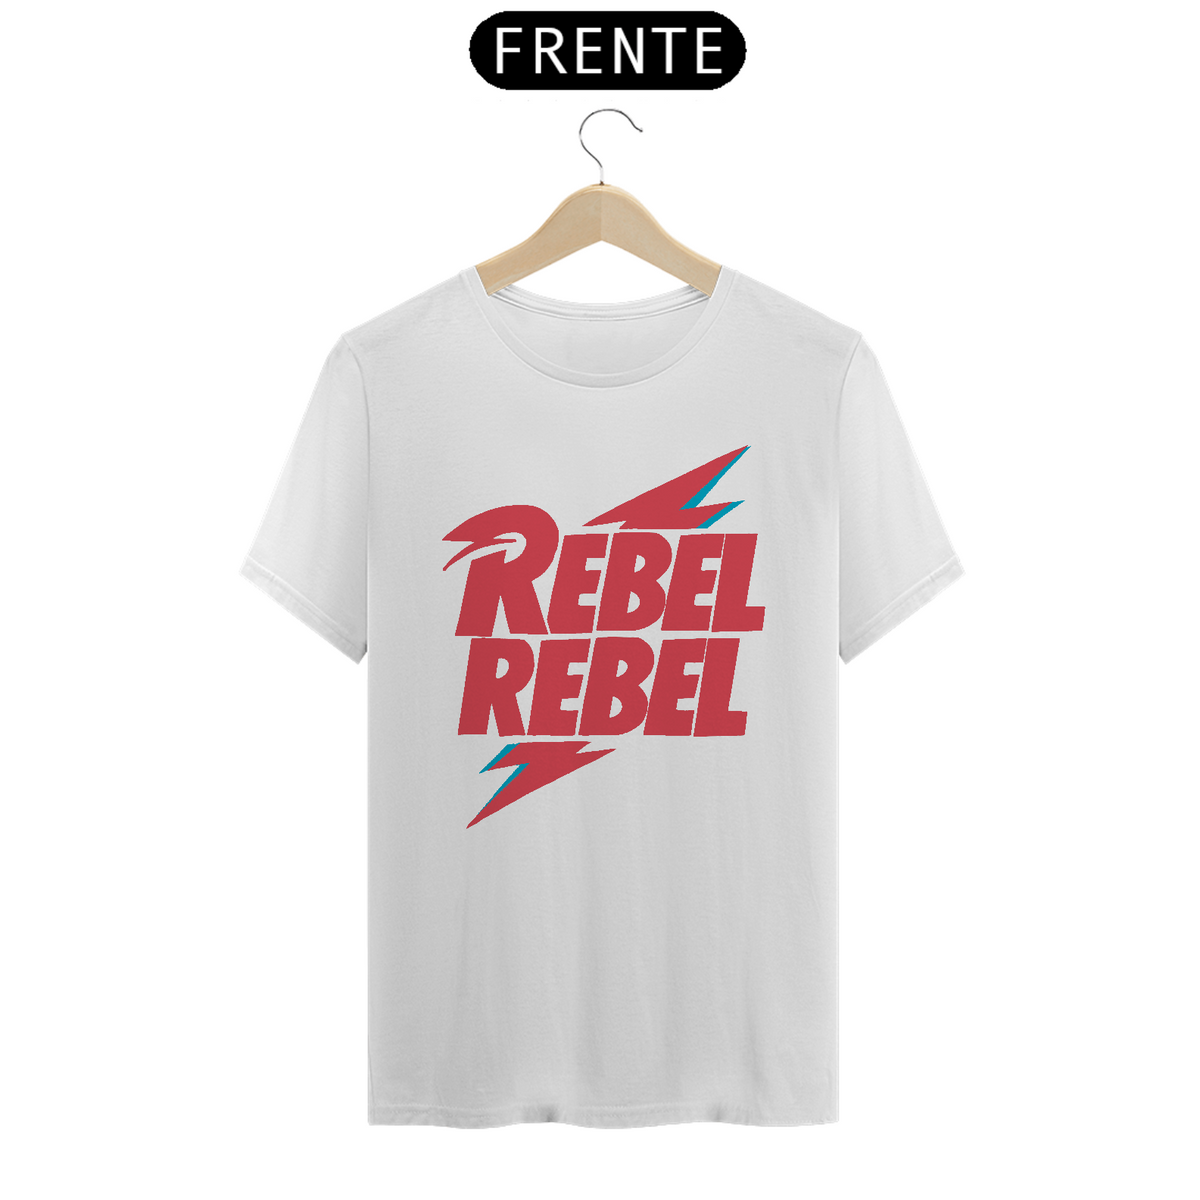 Nome do produto: ZoomBizz Rebel Rebel